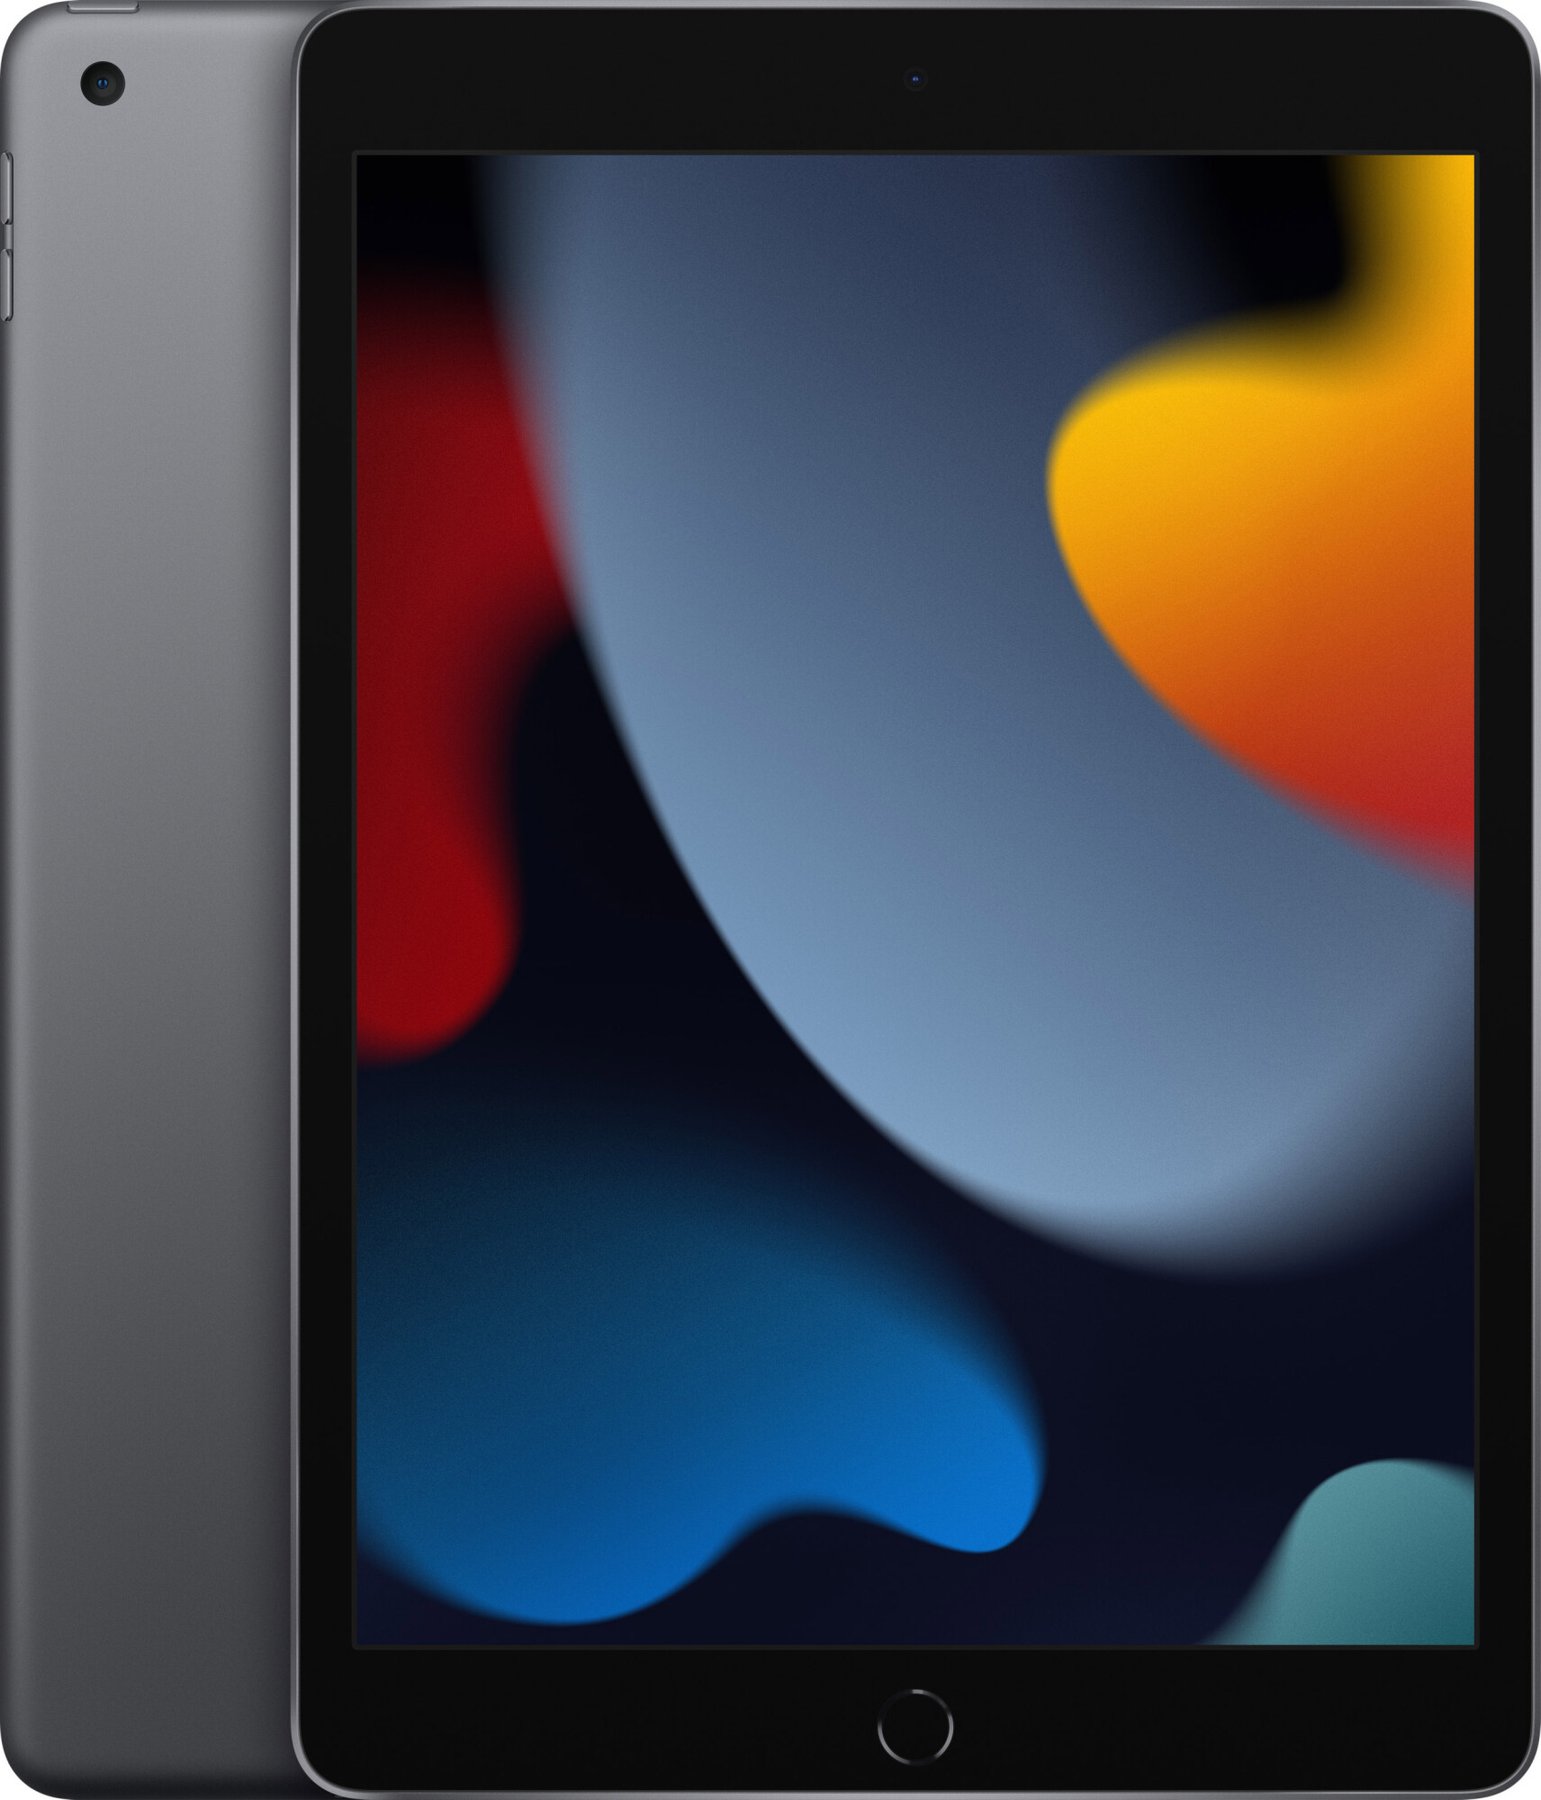 iPad 10.2 2021 Wi-Fi + Cellular 64GB Space Gray (MK663)